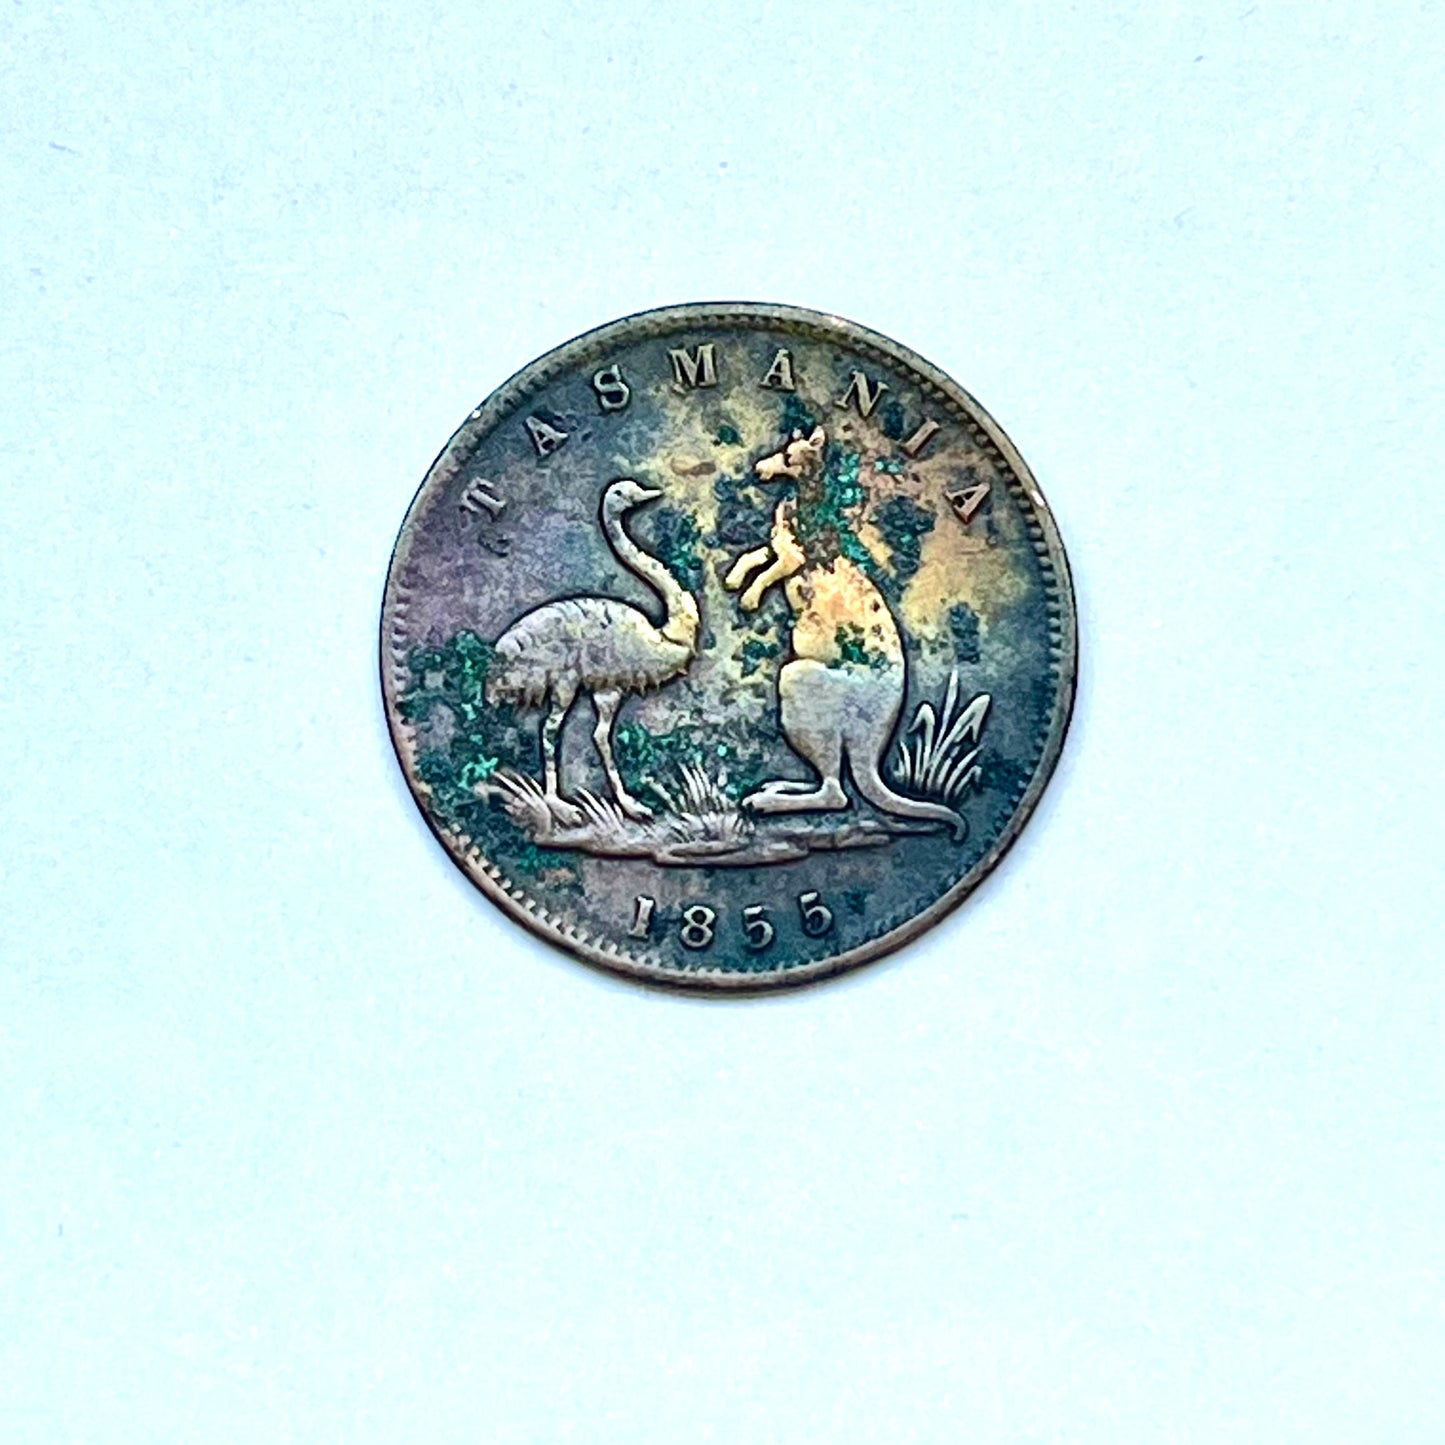 罕见的 19 世纪中期早期澳大利亚半便士商店代币，属于霍巴特镇利物浦街的刘易斯·亚伯拉罕斯·德雷珀 (Lewis Abrahams Draper)，日期为 1855 年。